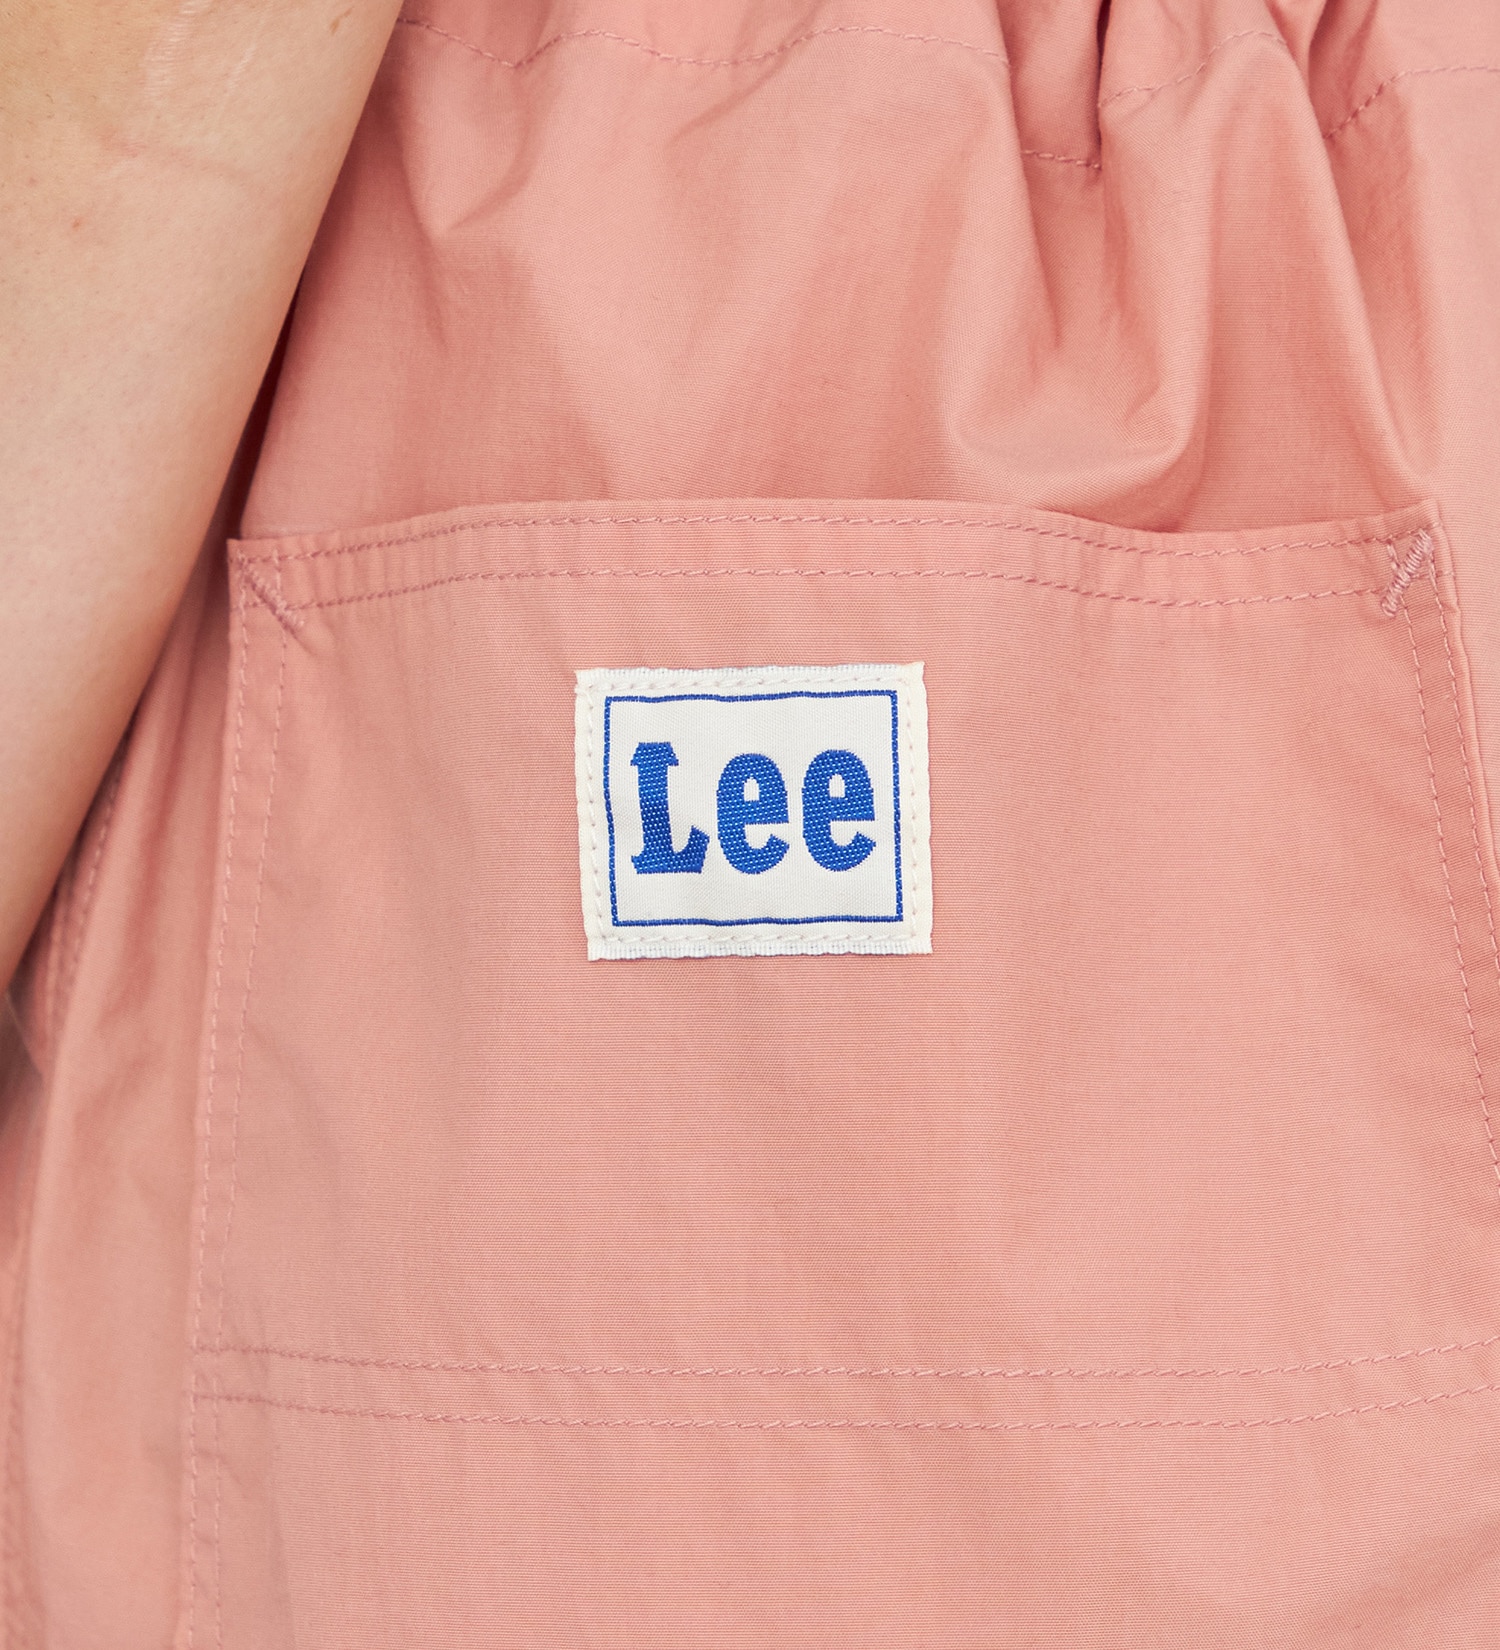 Lee(リー)の【GW SALE】【リニューアル】パラシュートイージーパンツ|パンツ/パンツ/レディース|ピンク